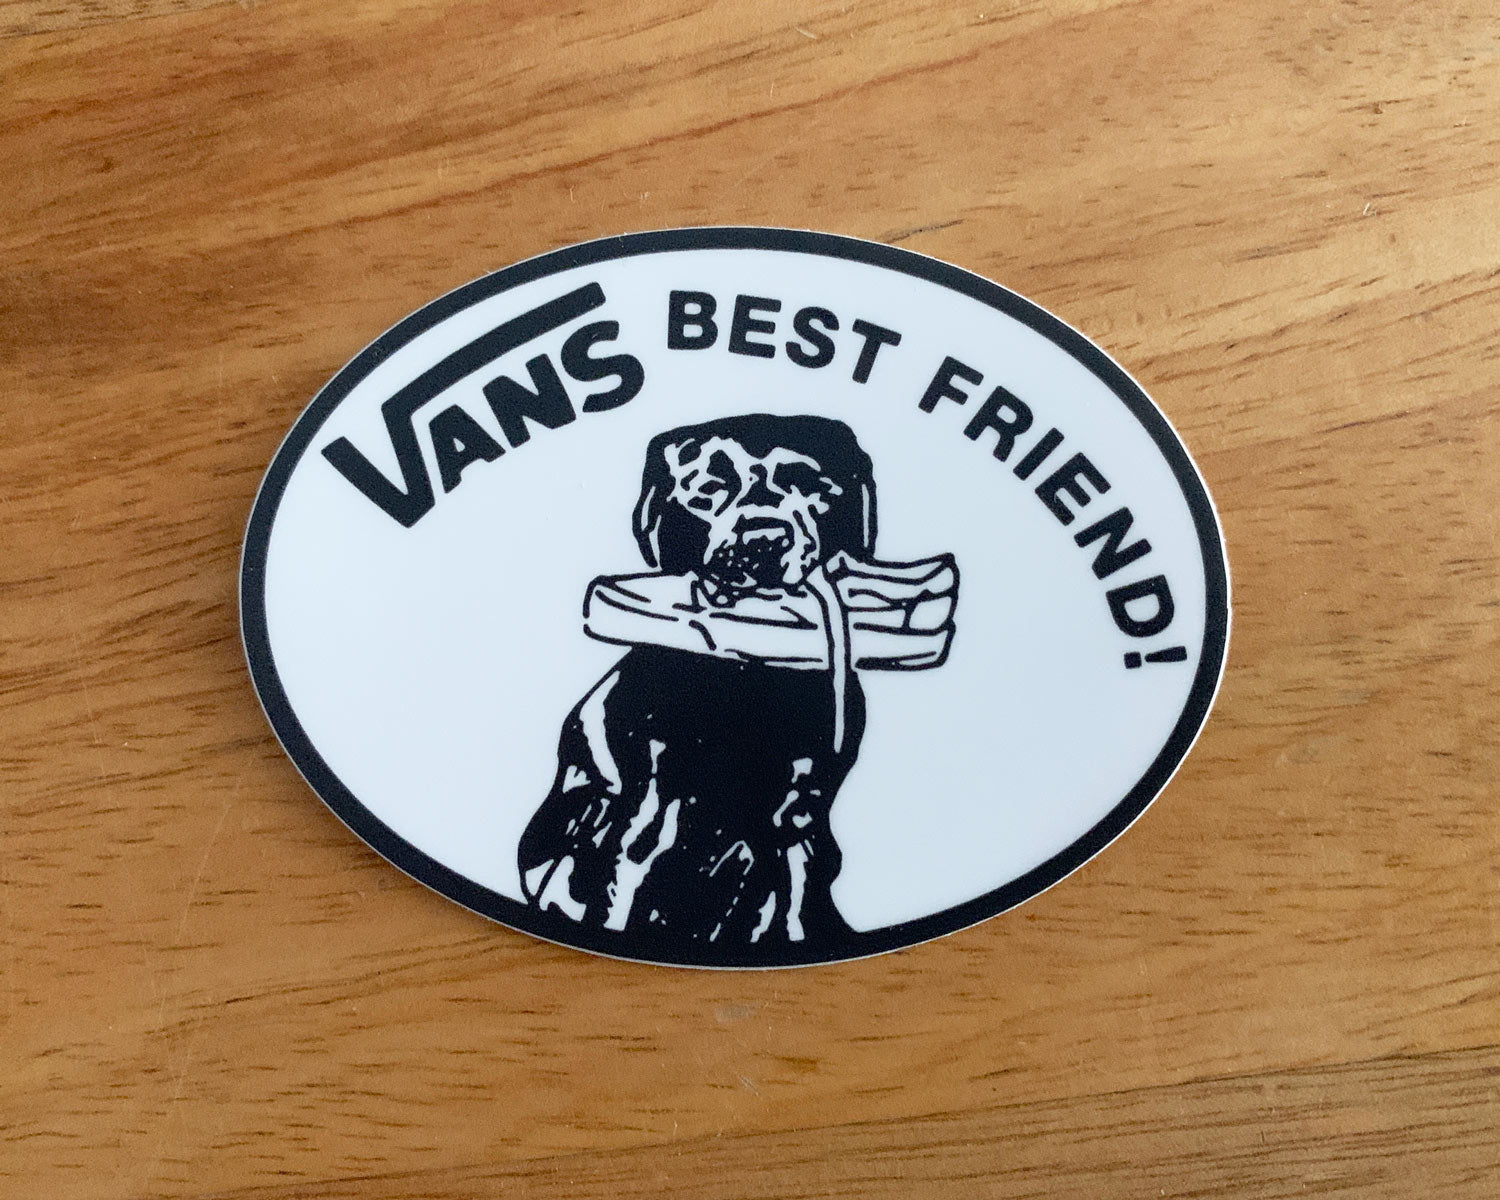 Vans best friend sticker